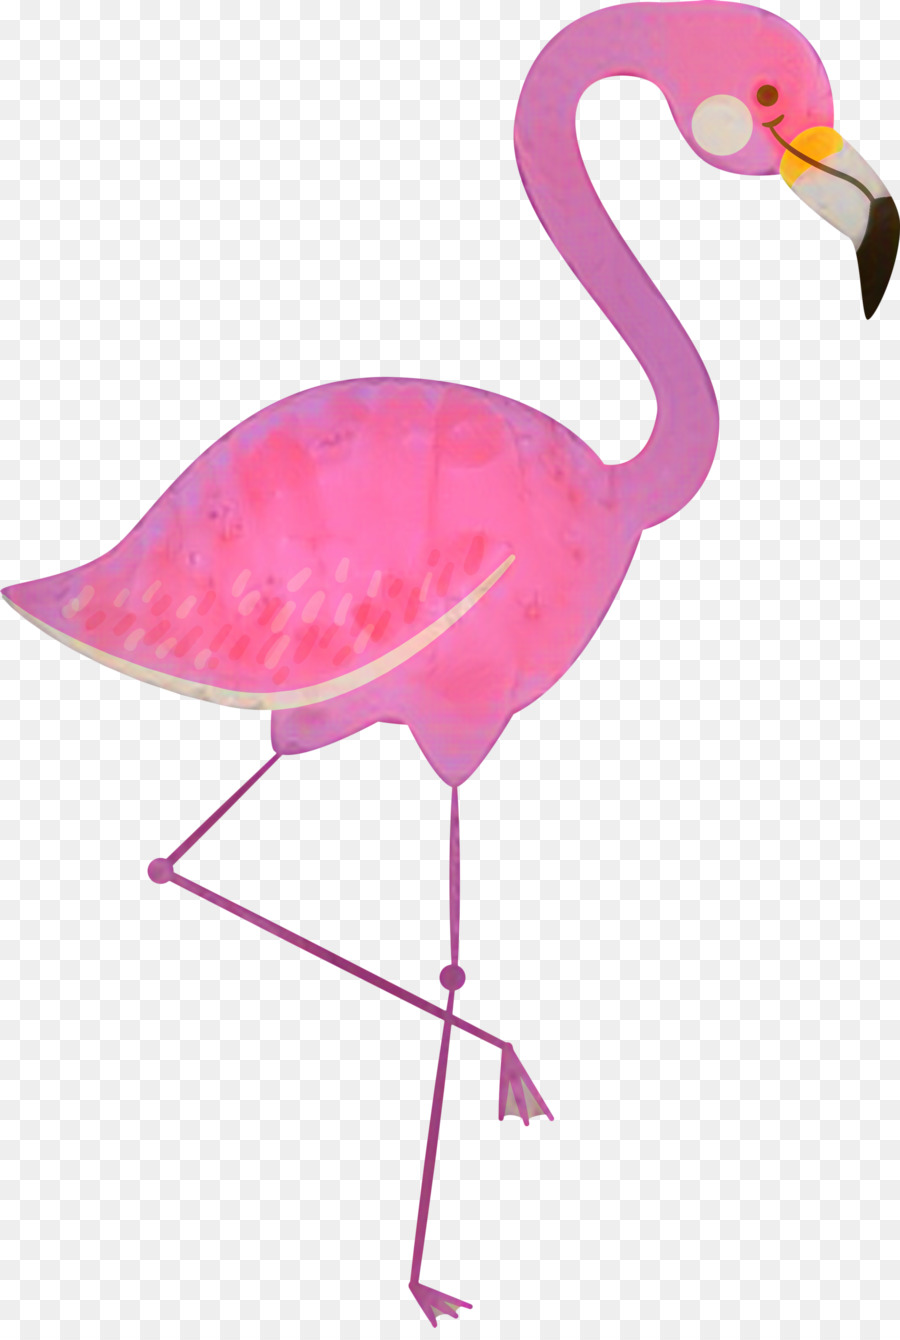 Portable Network Graphics Clip art Plastic flamingo Vector graphics -  png download - 2358*3480 - Free Transparent Flamingo png Download.